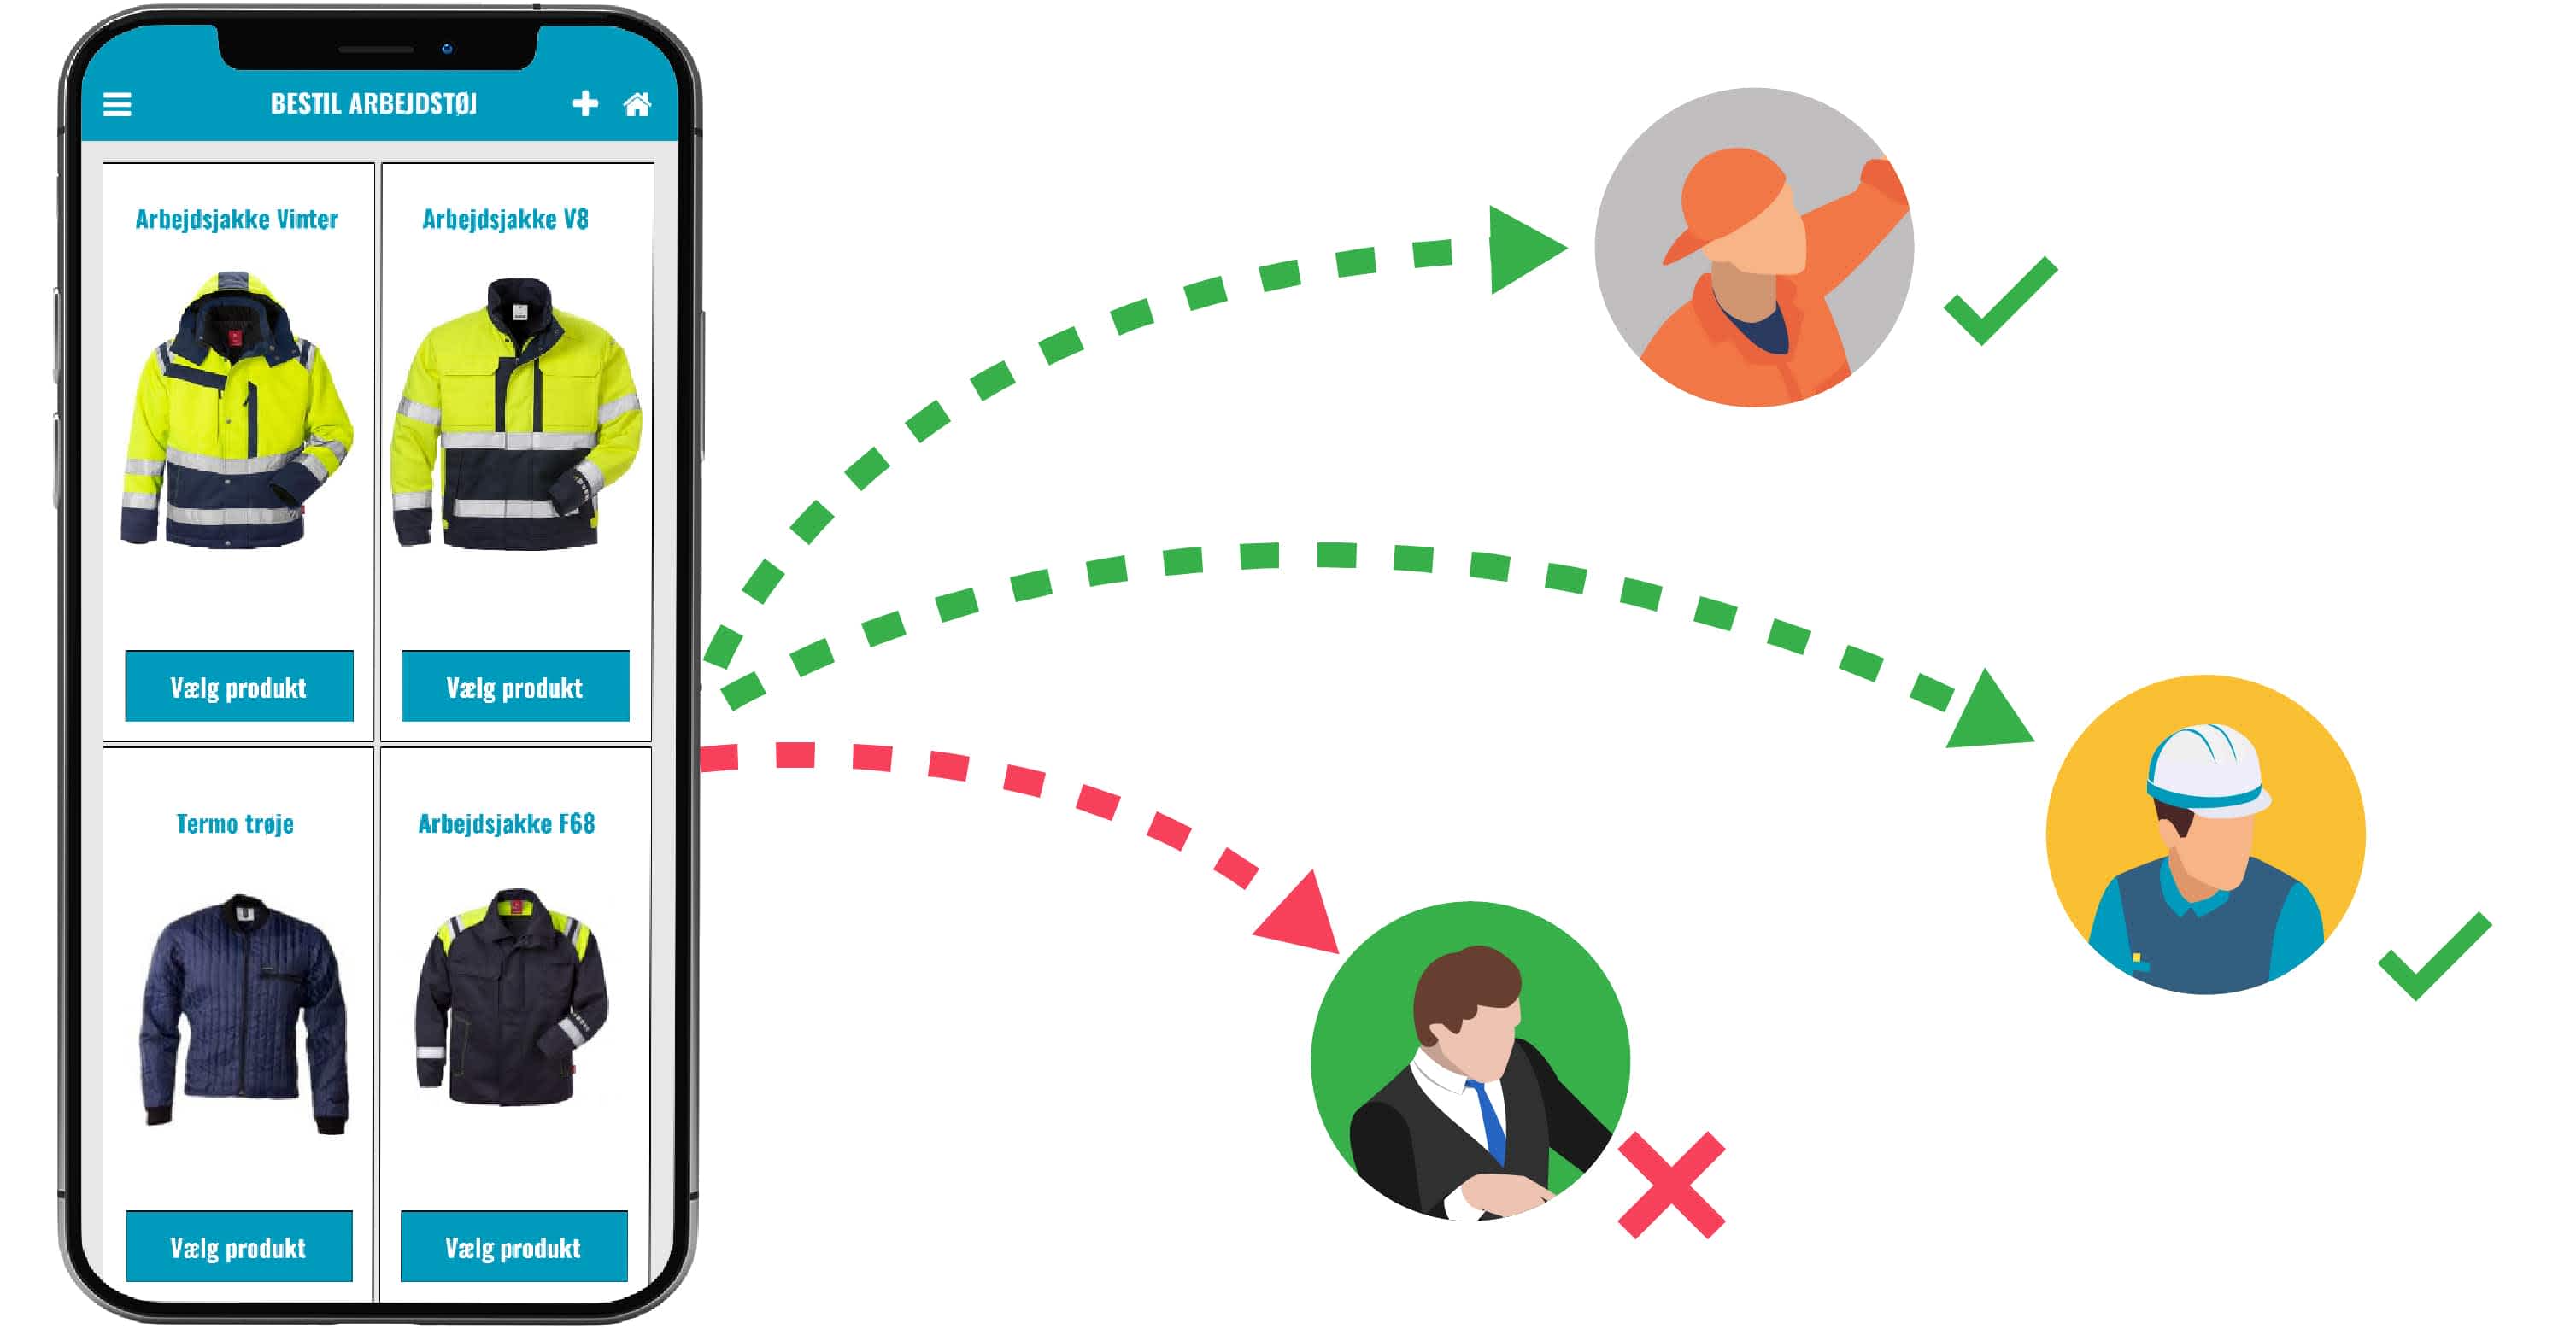 App køb arbejdstøj segmenteret kommunikation til medarbejdere